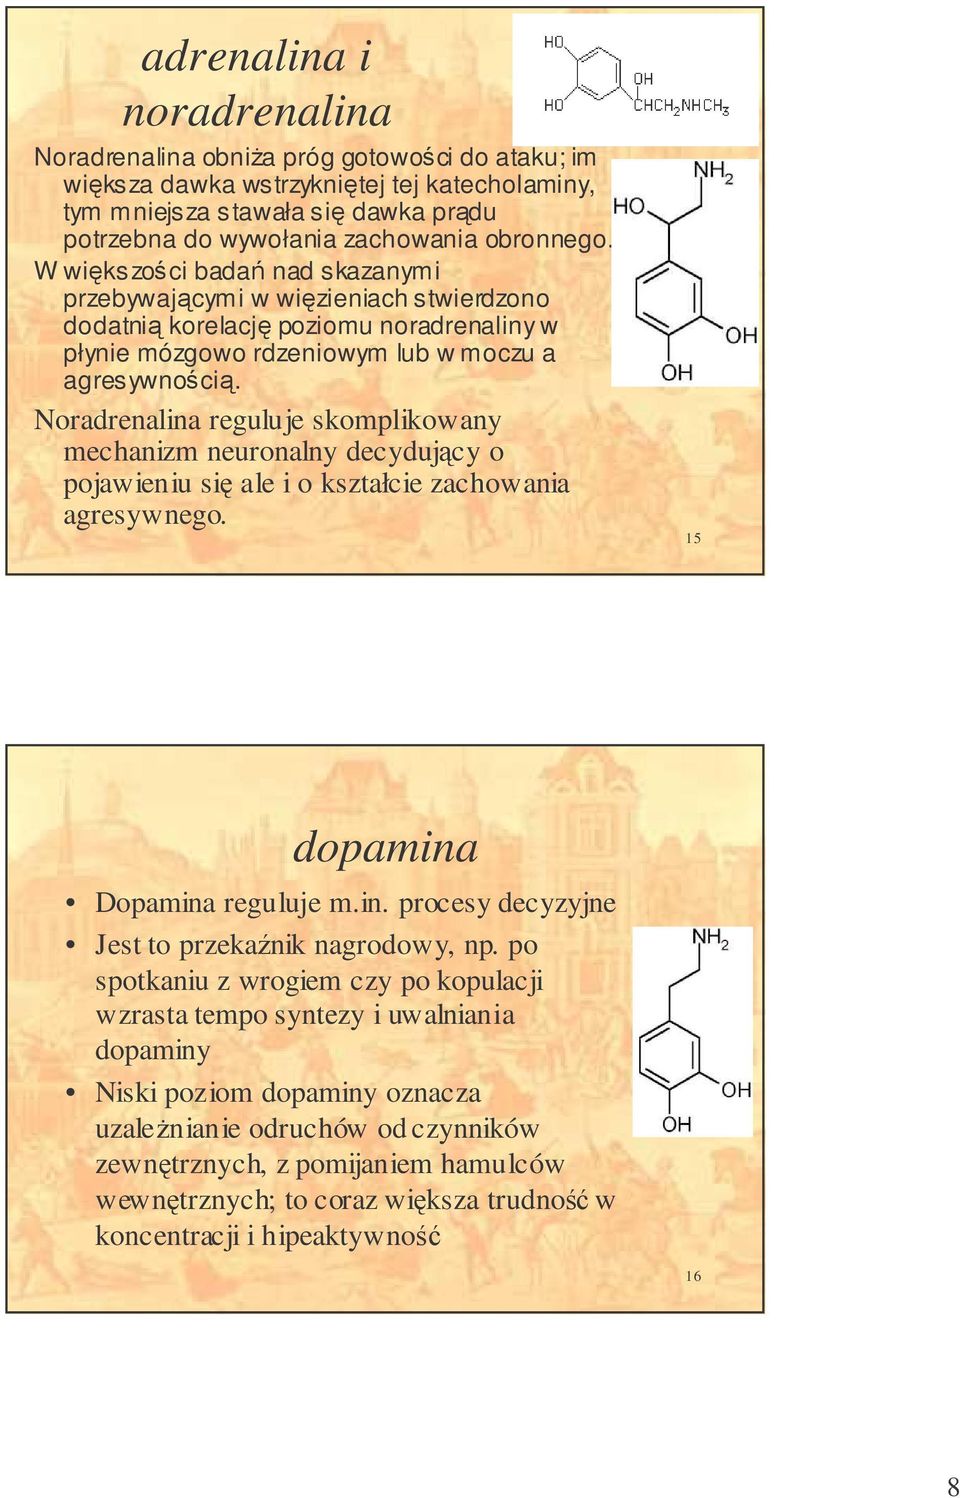 Noradrenalina reguluje skomplikowany mechanizm neuronalny decydujcy o pojawieniu si ale i o kształcie zachowania agresywnego. 15 dopamina Dopamina reguluje m.in. procesy decyzyjne Jest to przekanik nagrodowy, np.